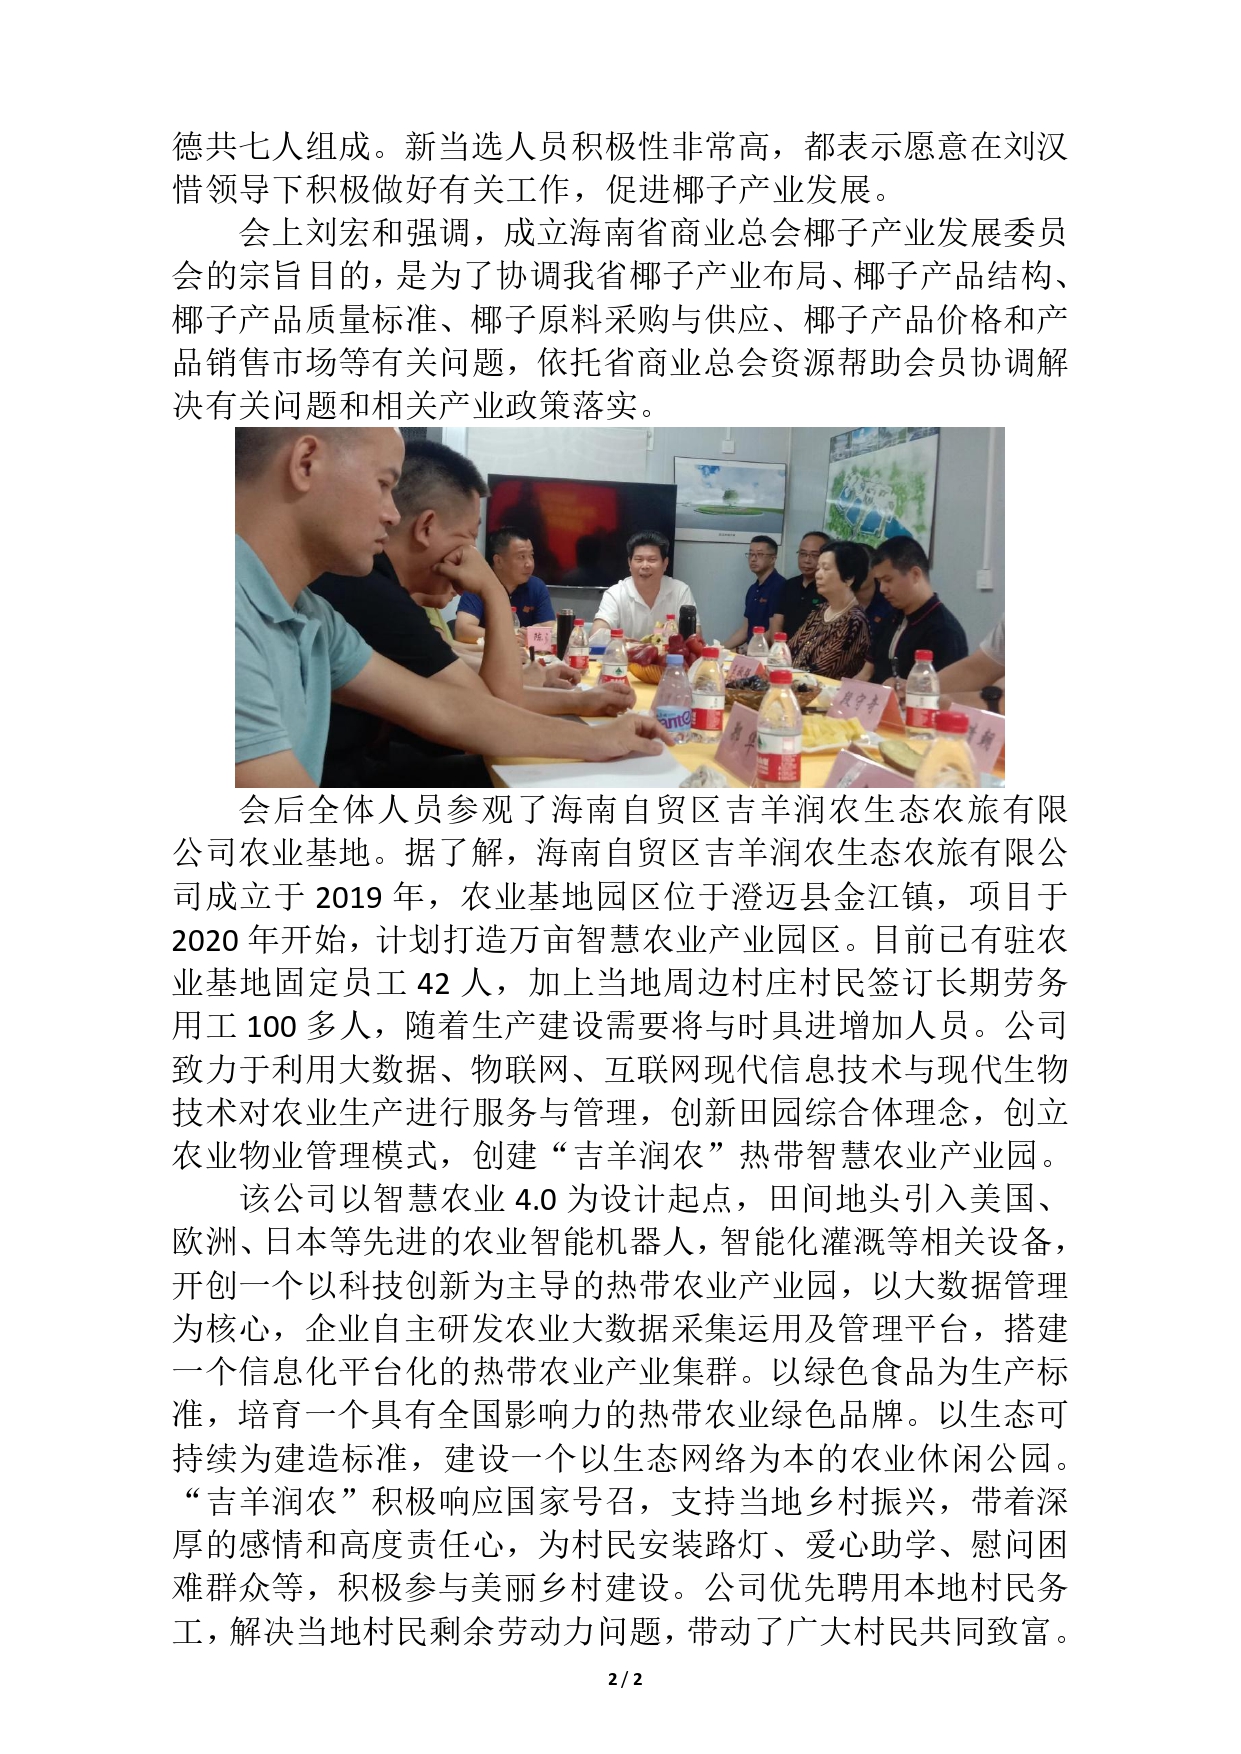 海南省商业总会椰子产业发展委员会成立(1)_page-0002.jpg